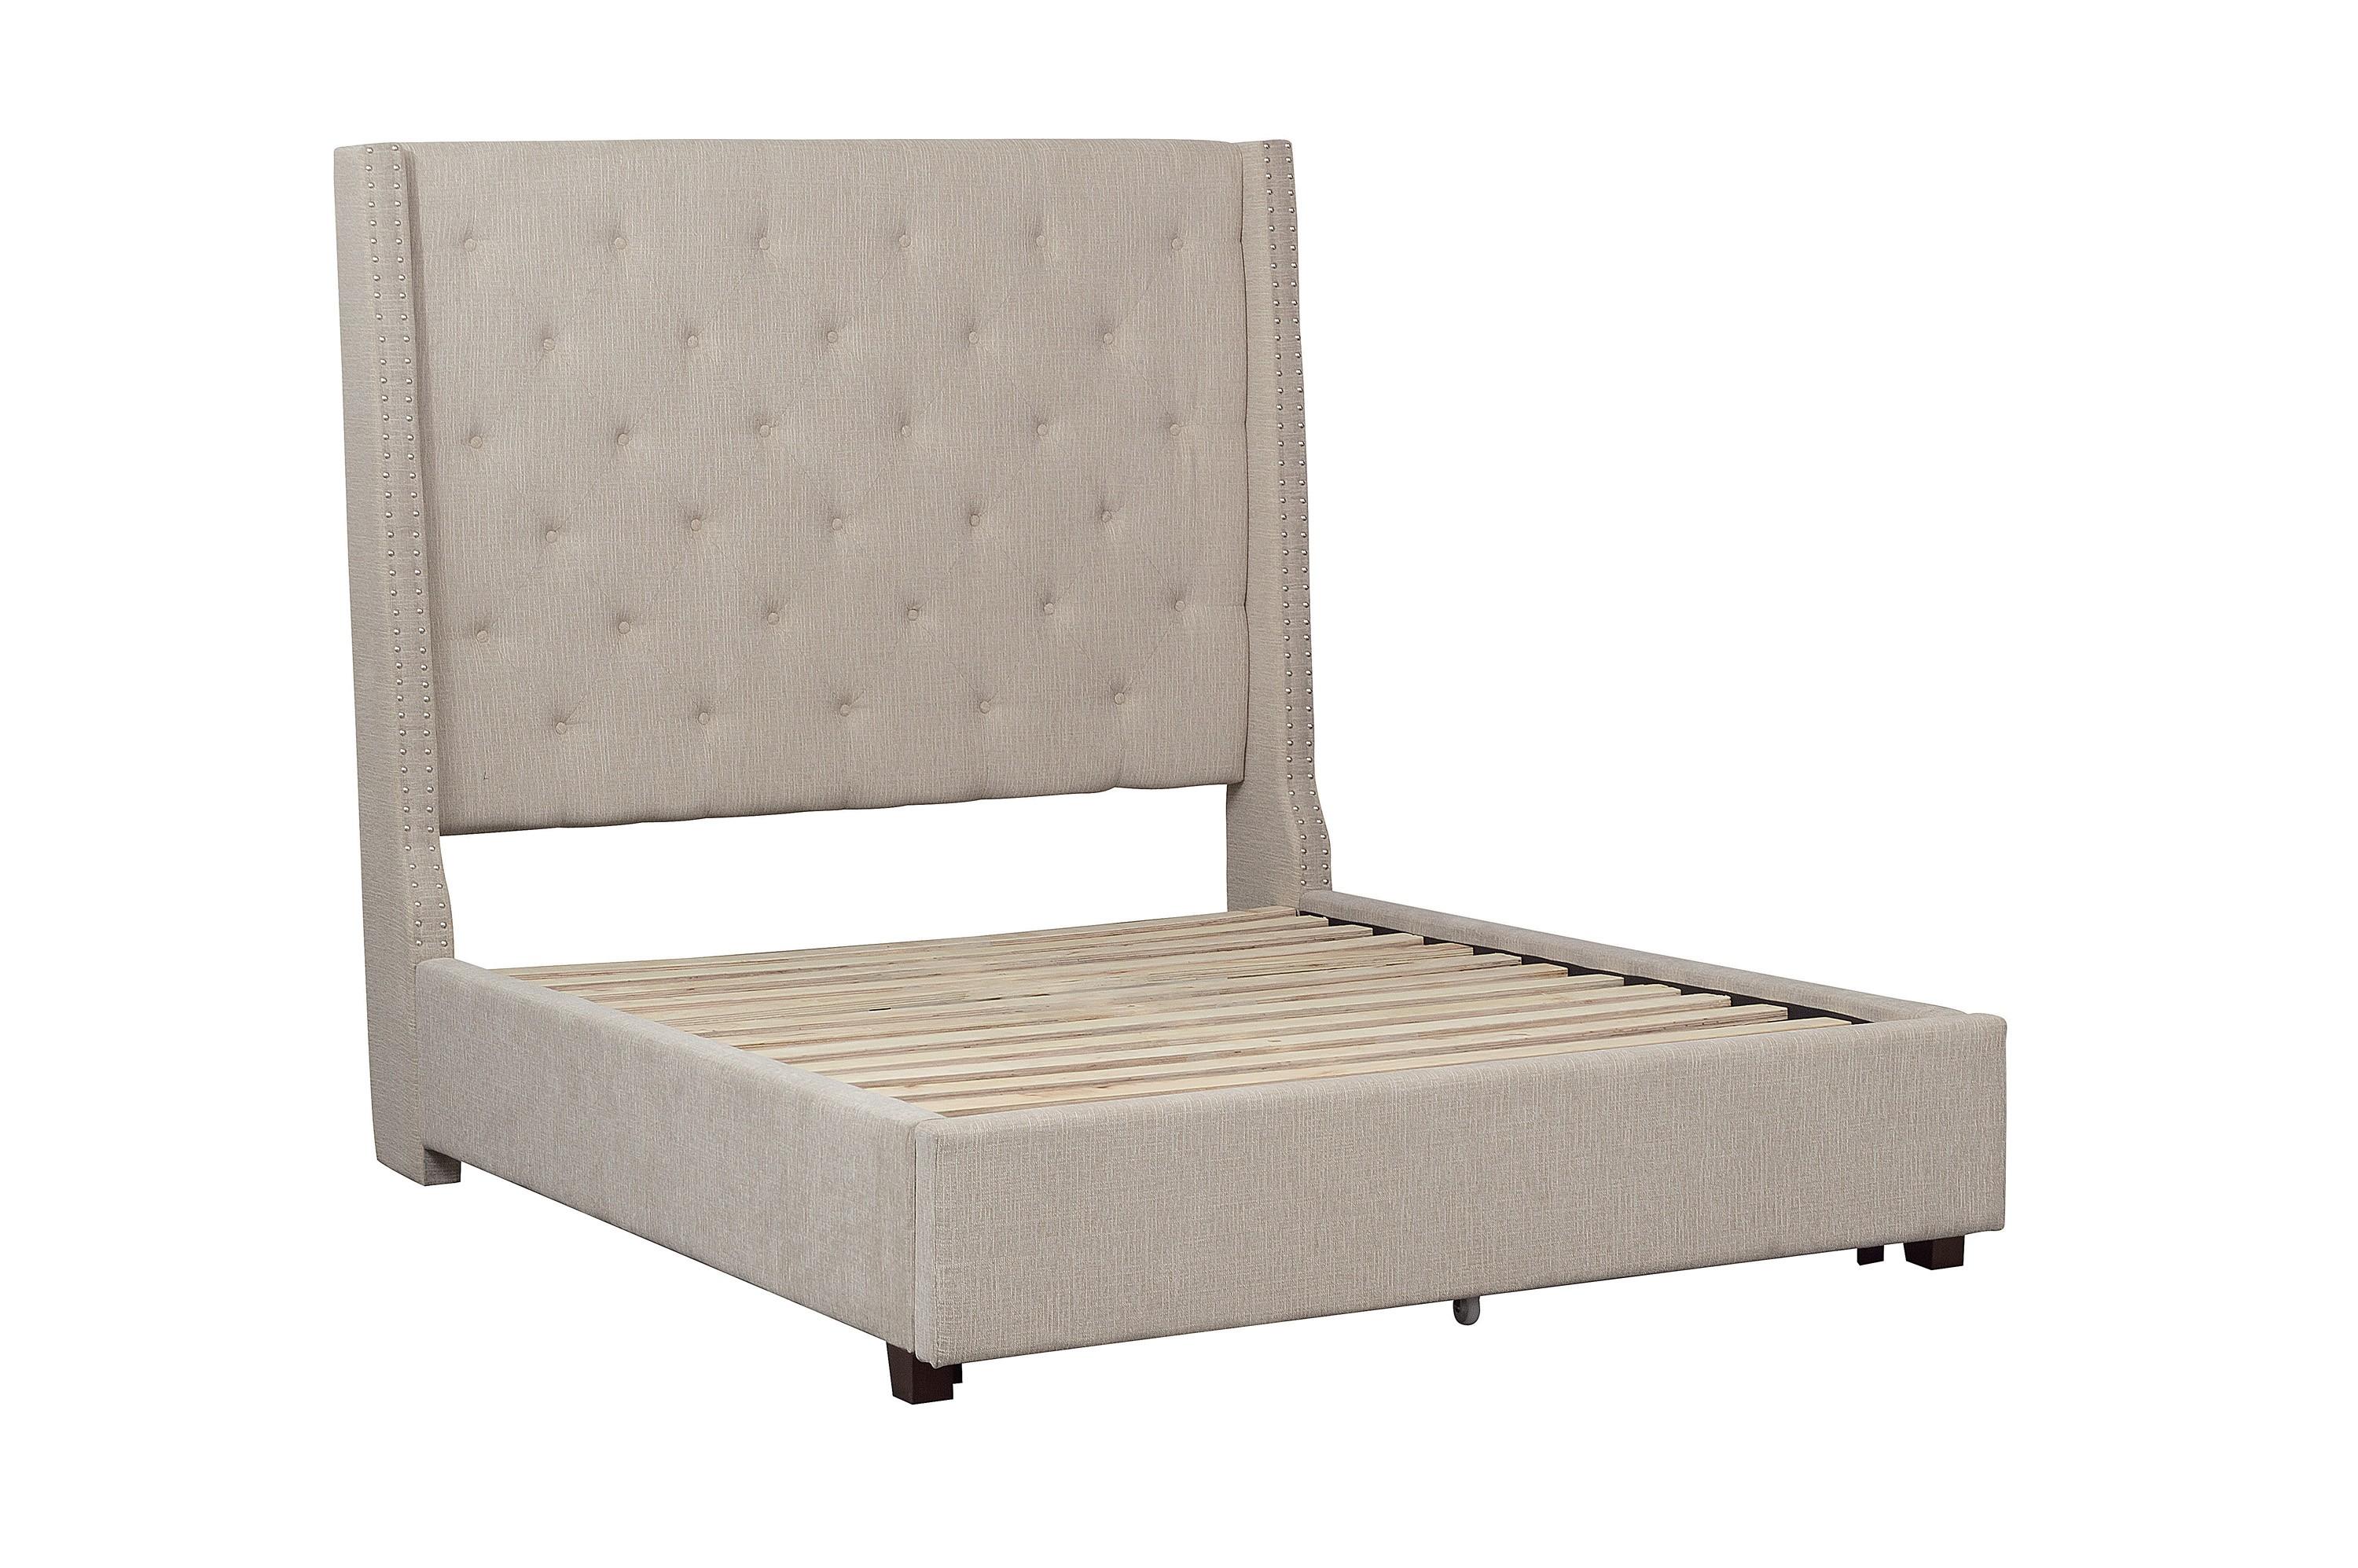 

    
Modern Beige Solid Wood CAL Bed Homelegance 5877KBE-1CK* Fairborn
